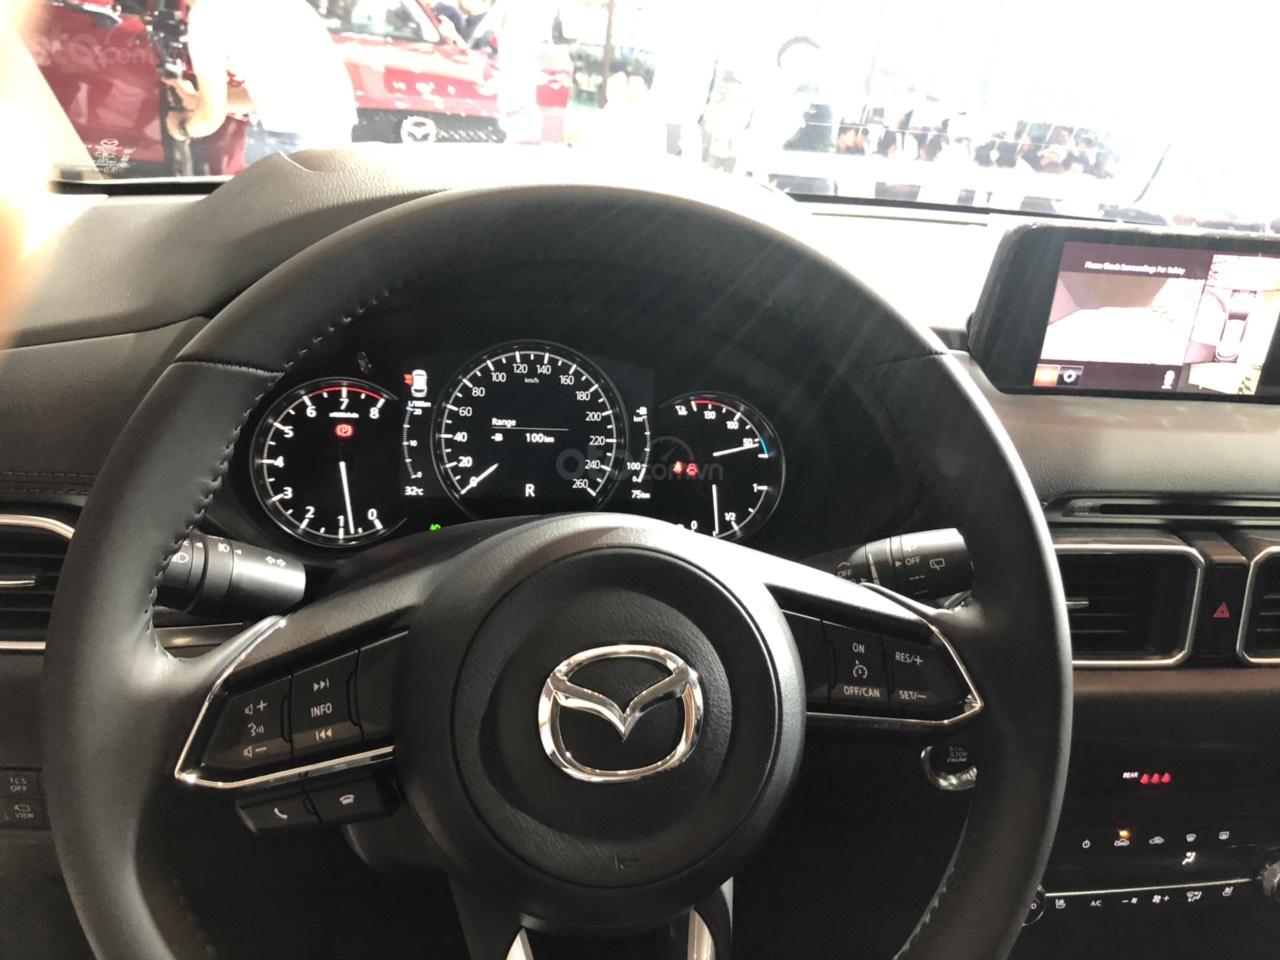 So sanh xe Mazda CX-5 2019 voi Hyundai Tucson 2019